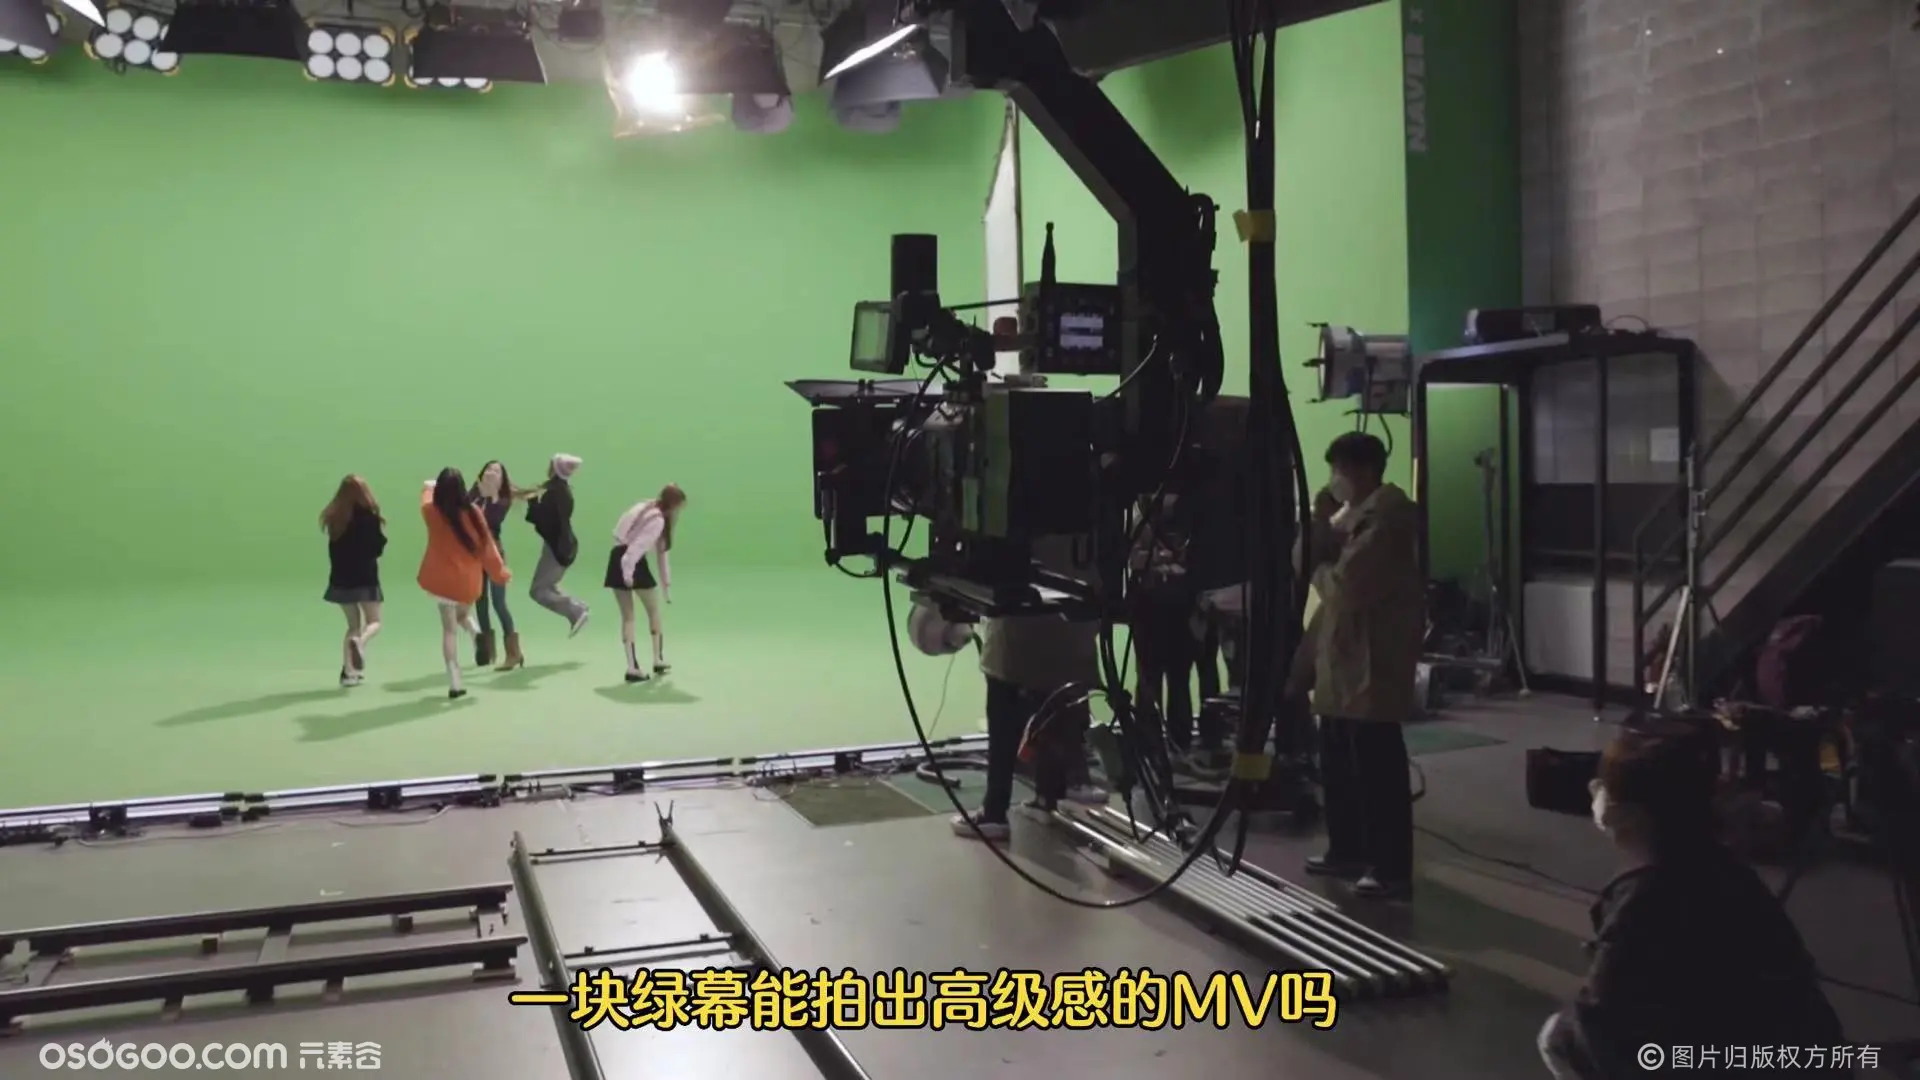 一块绿幕如何拍出高级感的MV呢 ？#mv拍摄#绿幕抠像#虚拟